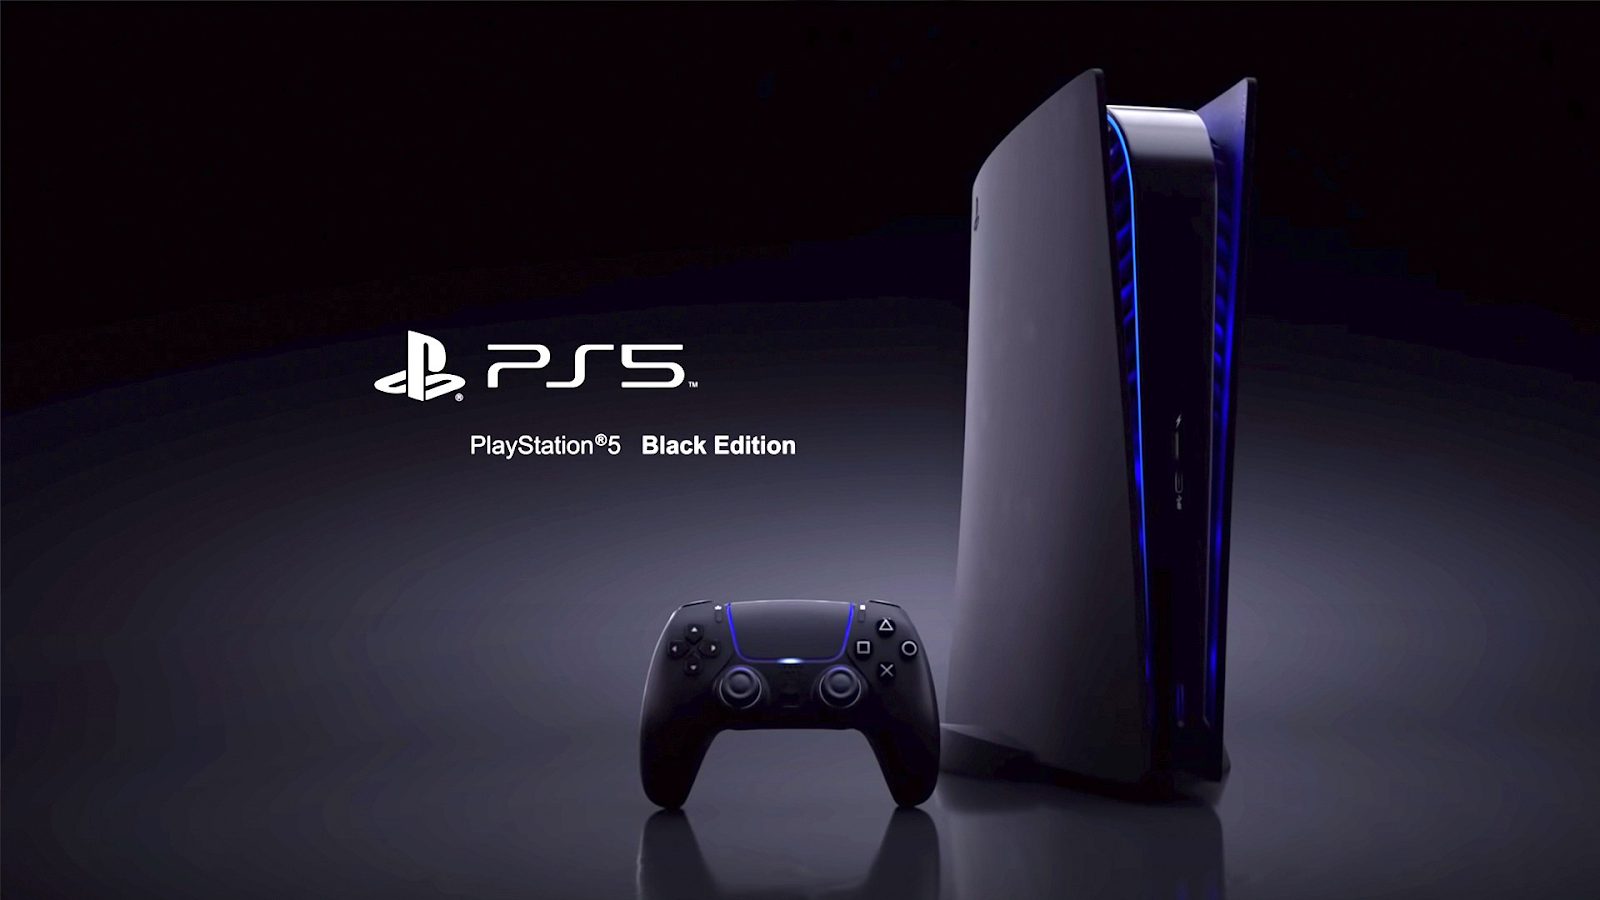 Danh sách các tựa game bom tấn miễn phí cho PlayStation Plus trên PS5